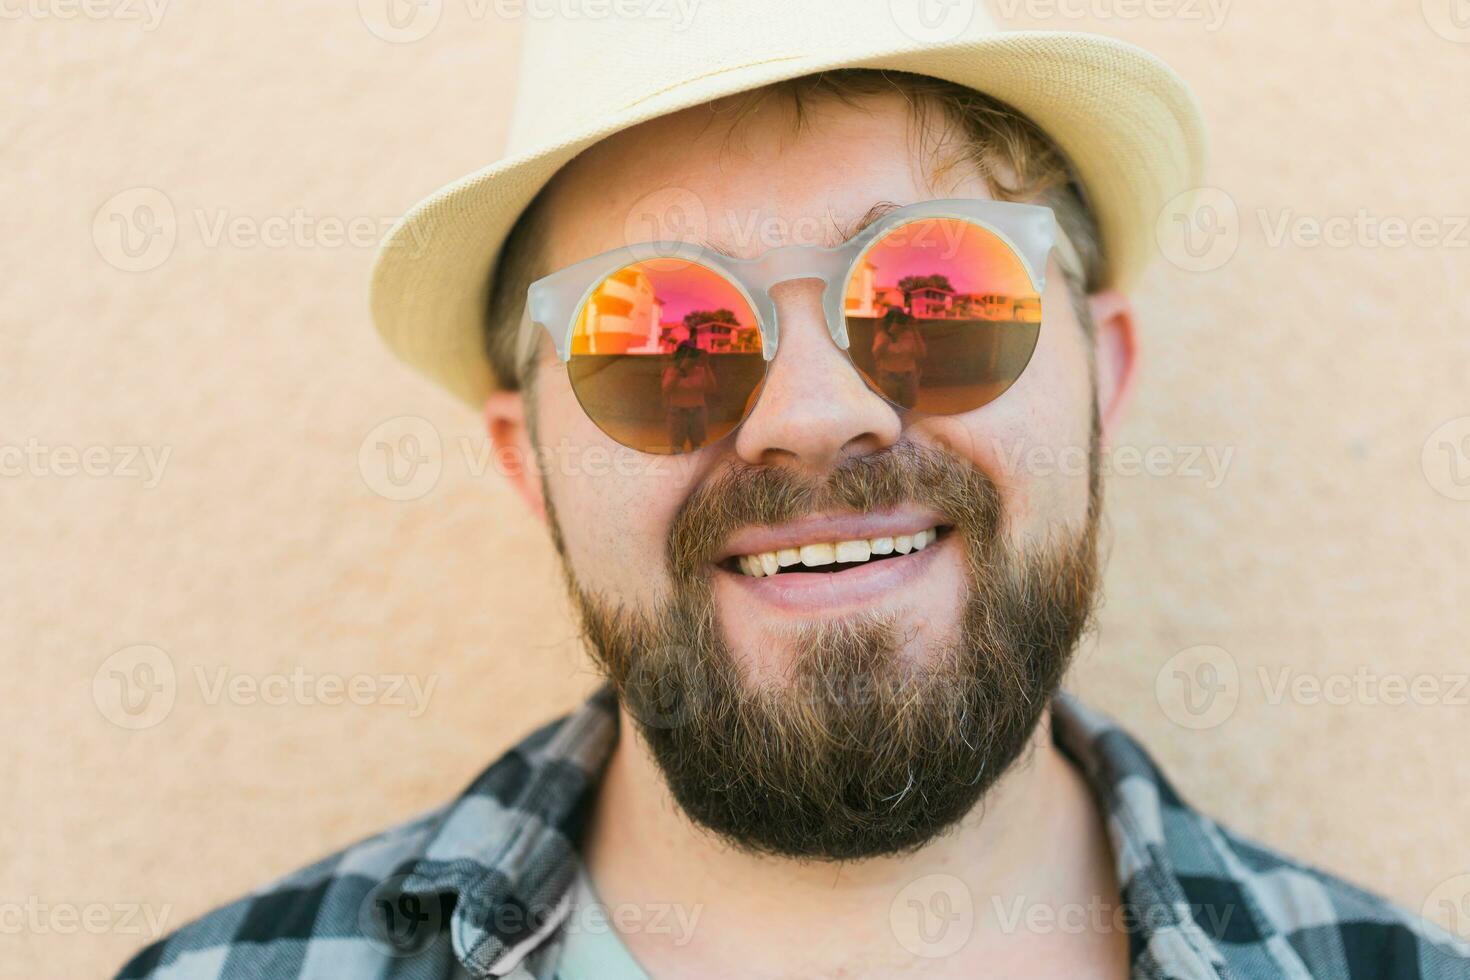 Porträt gut aussehend Mann tragen Sommer- Hut und Sonnenbrille und Plaid Hemd lächelnd glücklich in der Nähe von Mauer - - Reise Urlaube und Sommer- Urlaub Konzept foto